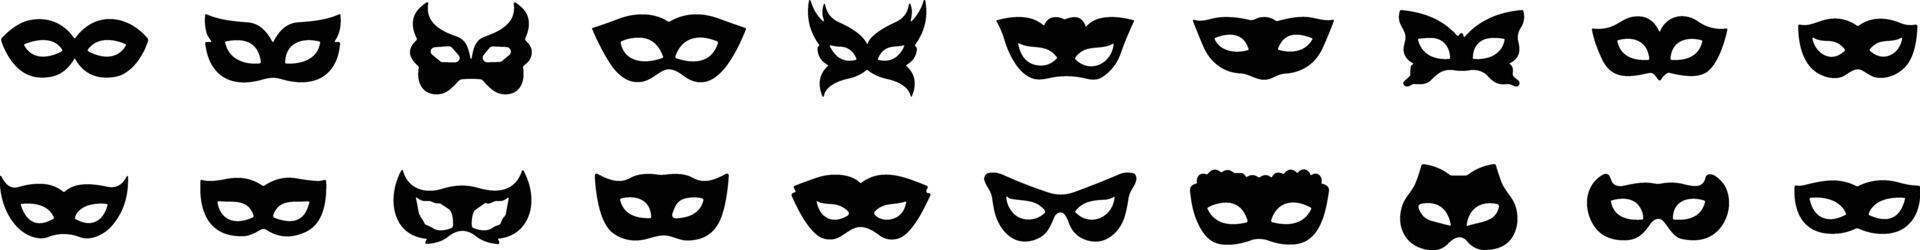 impostato di piatto carnevale maschere sagome. semplice nero icone di masquerade maschere, per festa, parata e carnevale, per mardi gras e Halloween. maschera elementi. viso maschera vettore